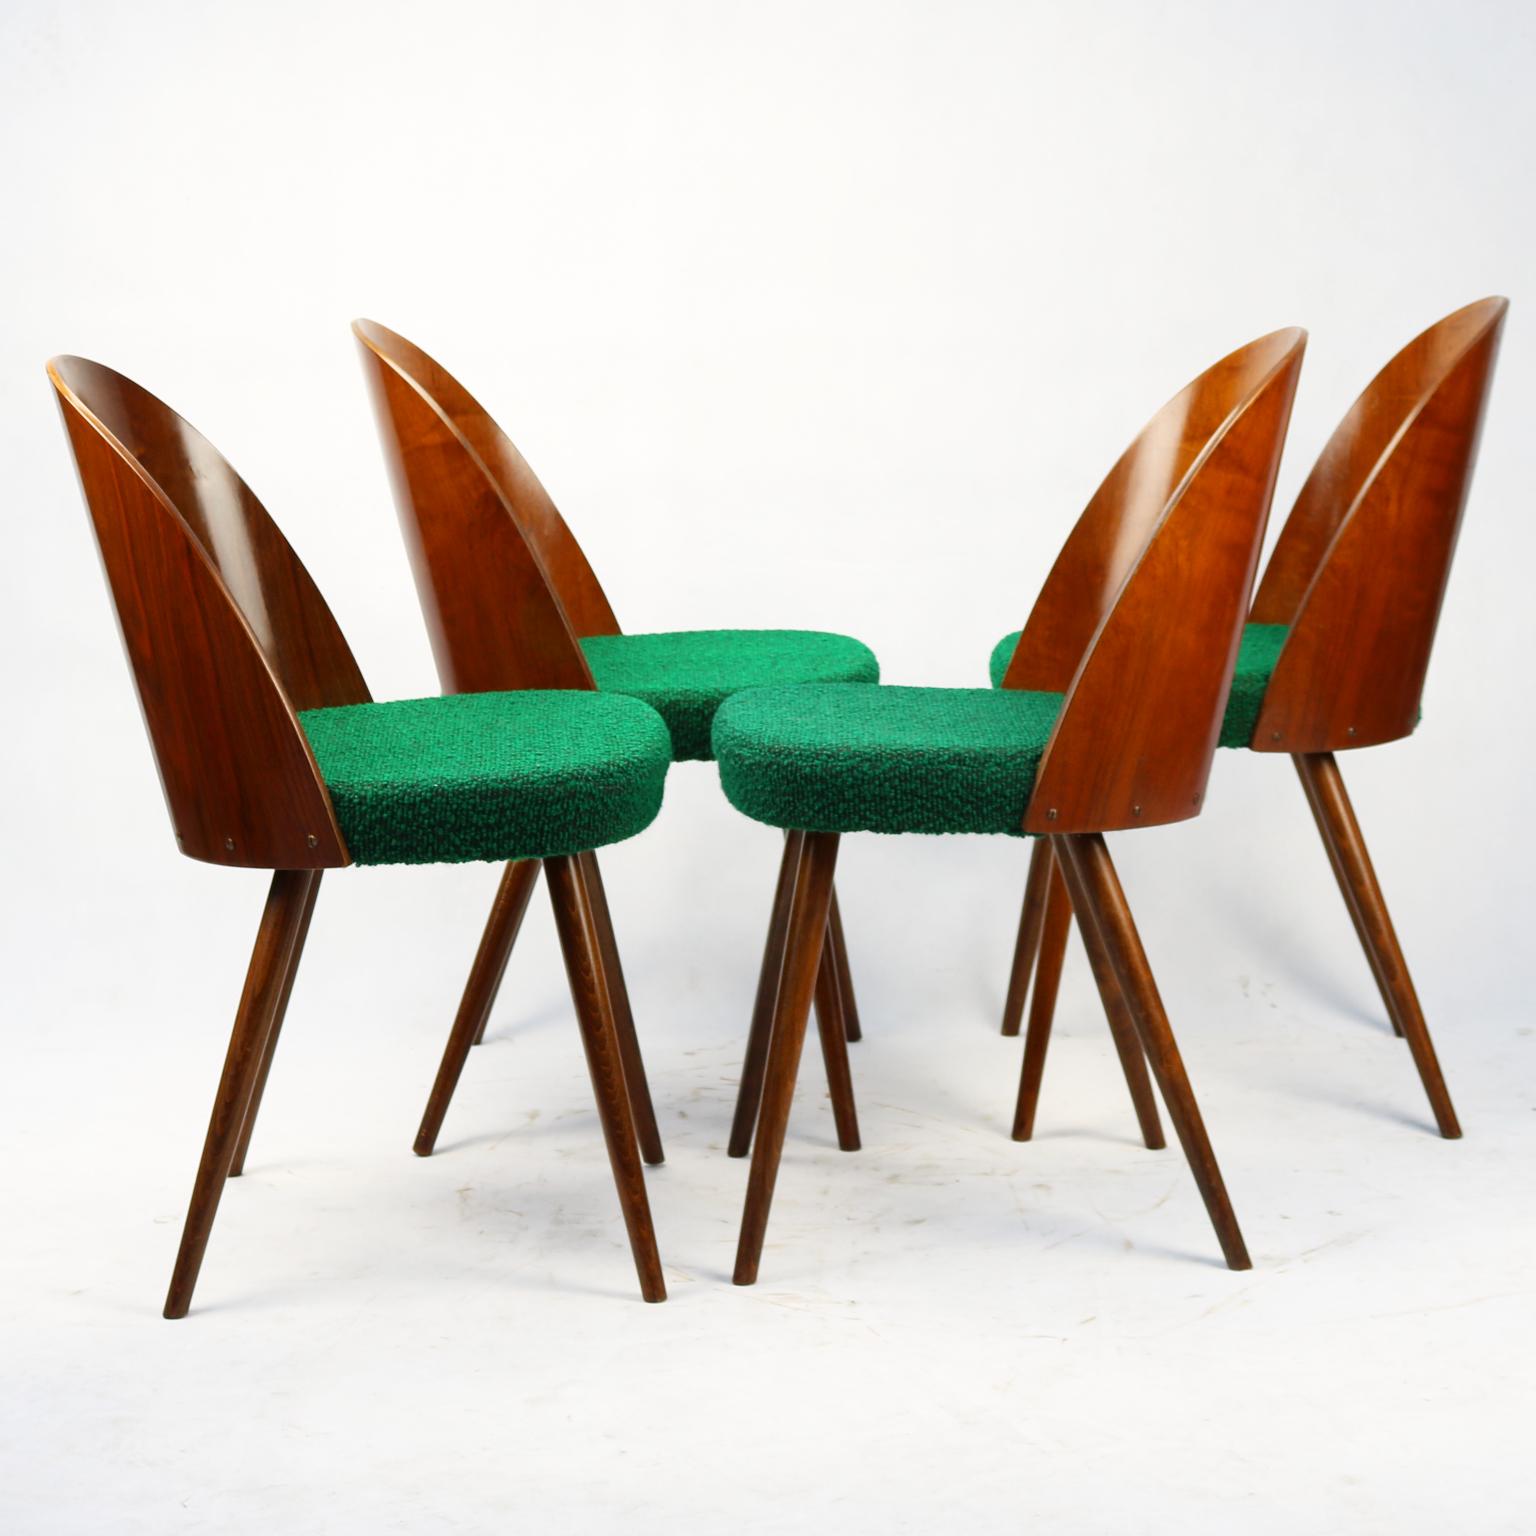 Czech Mid Century Dining Chairs by Antonín Šuman for Tatra Nabytok NP, 1960s